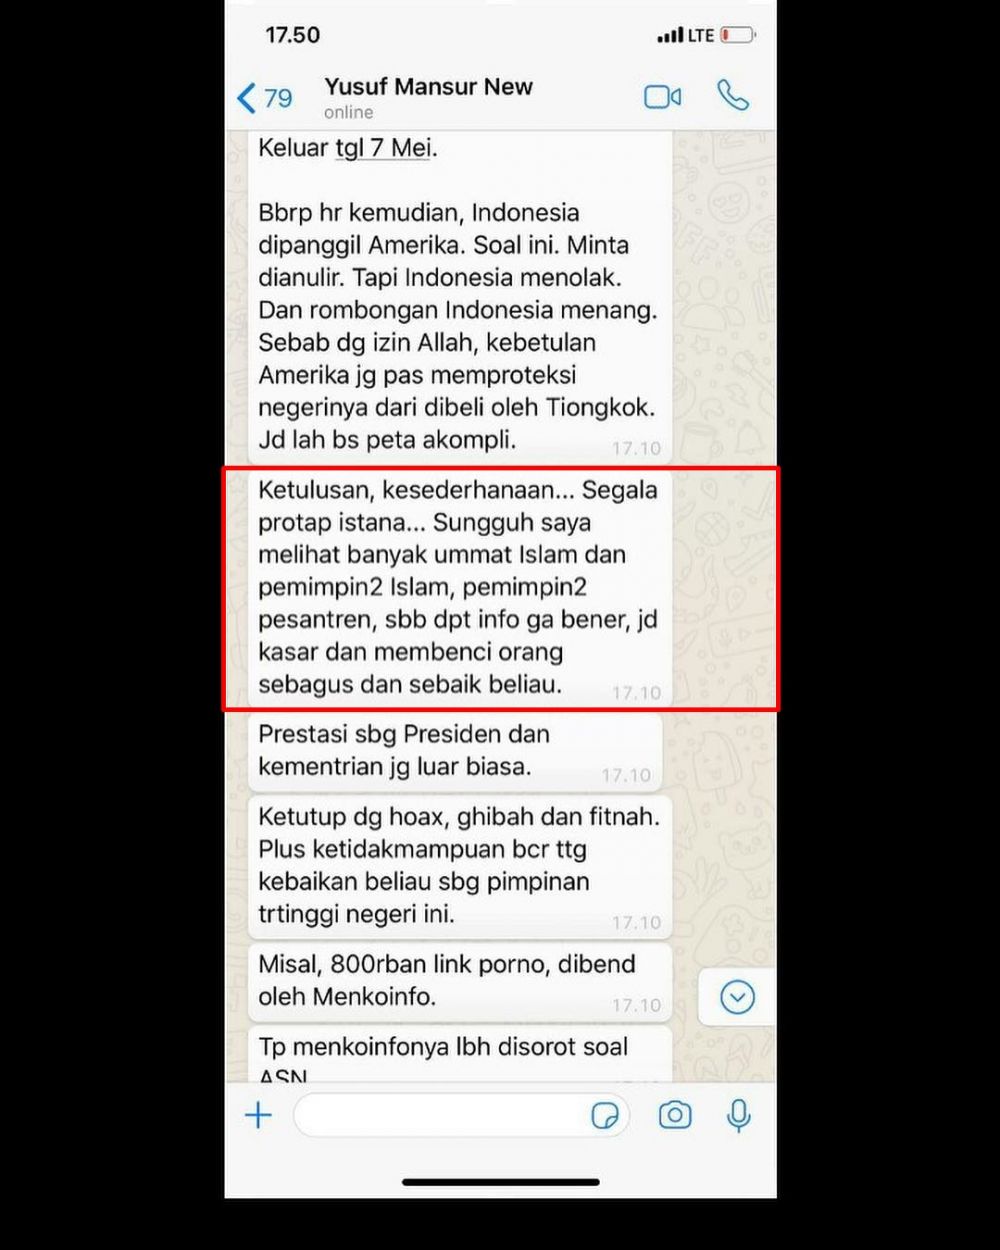 9 Alasan Yusuf Mansur mendukung Jokowi di Pilpres 2019